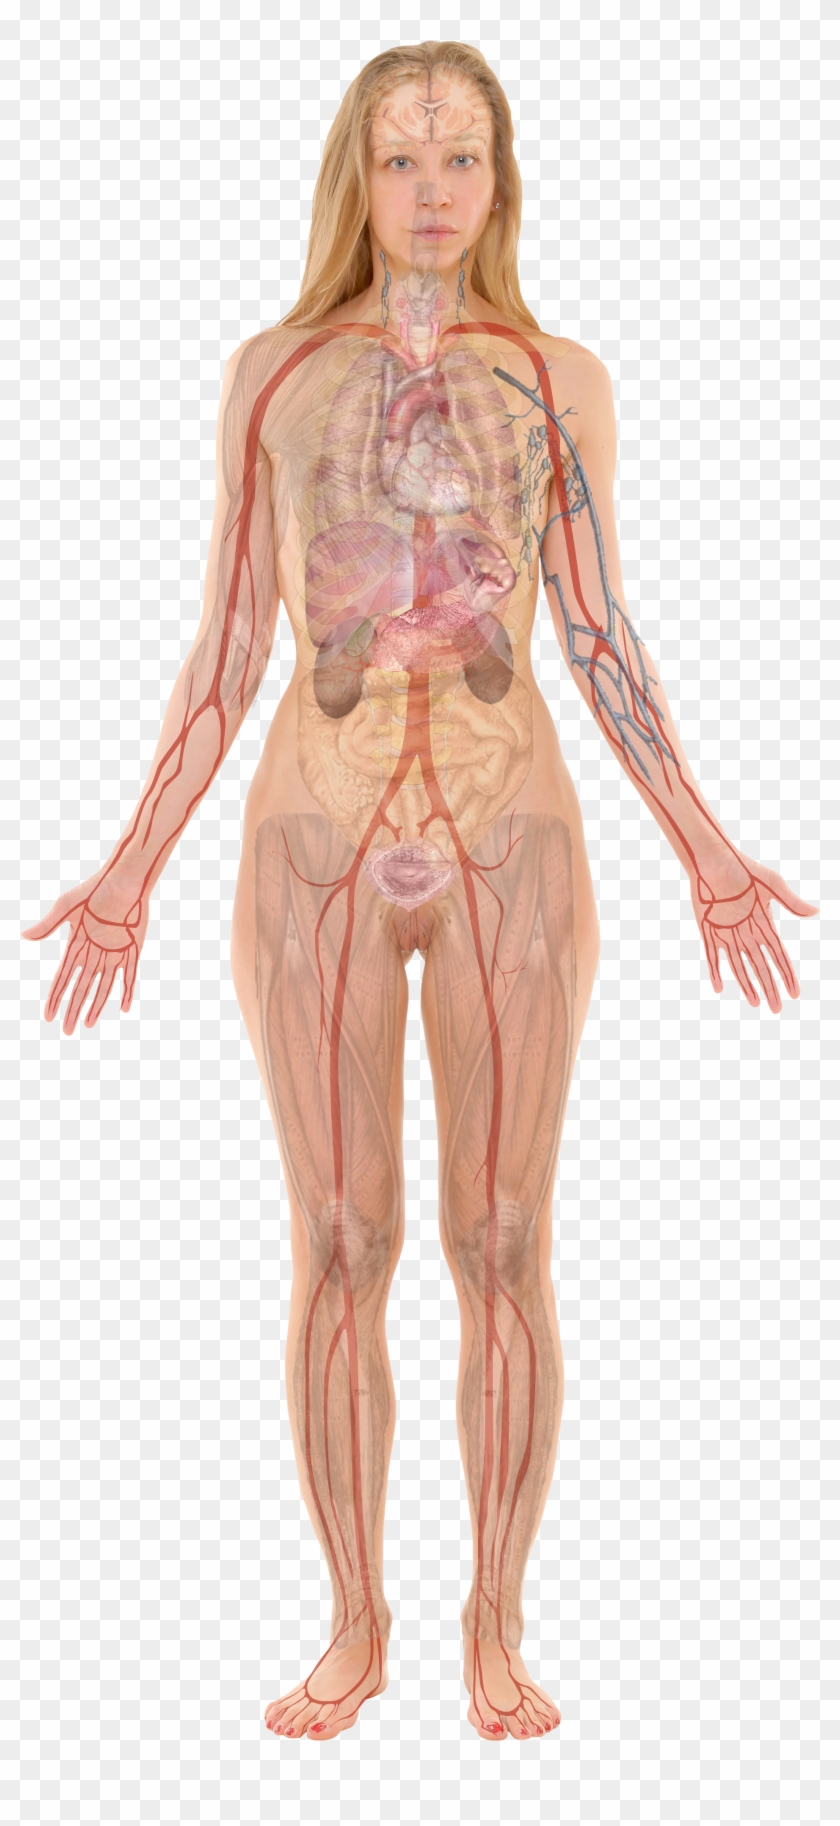 Female With Organs - Female Body Organ Anatomy Clipart #2521259